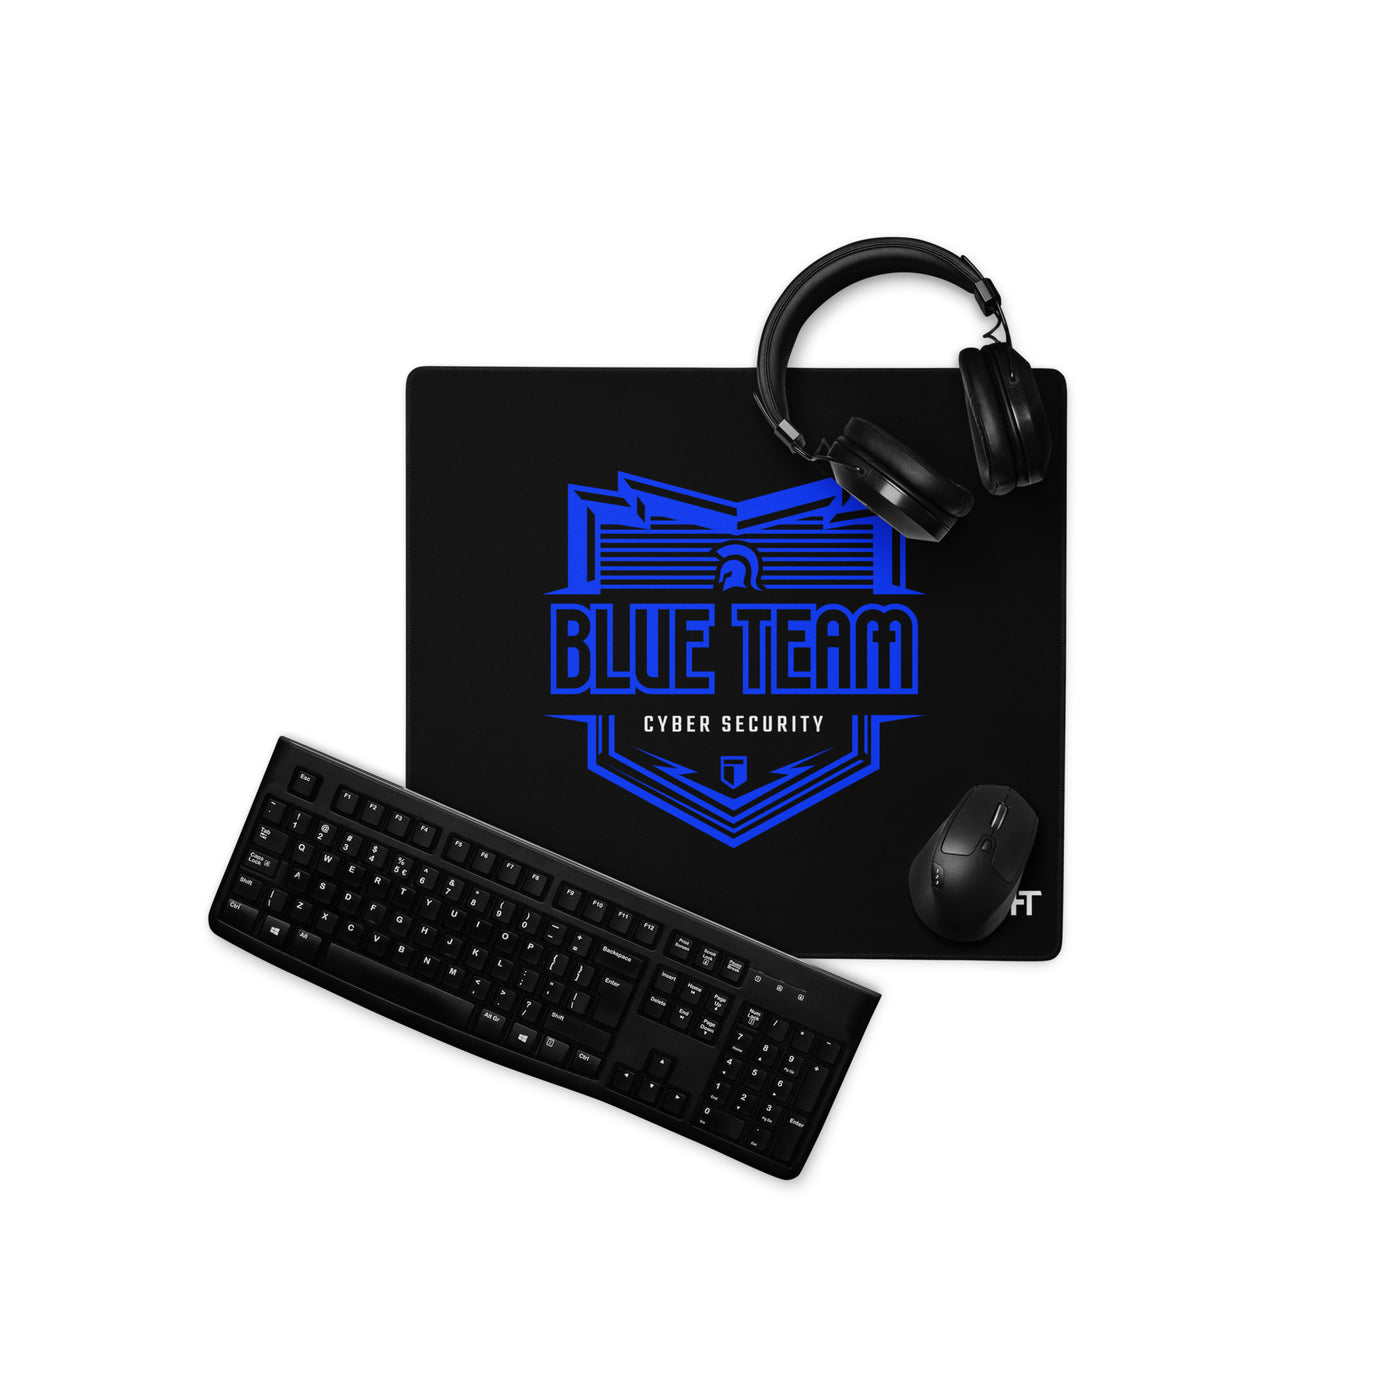 Cyber Security Blue Team 16 - Desk Mat